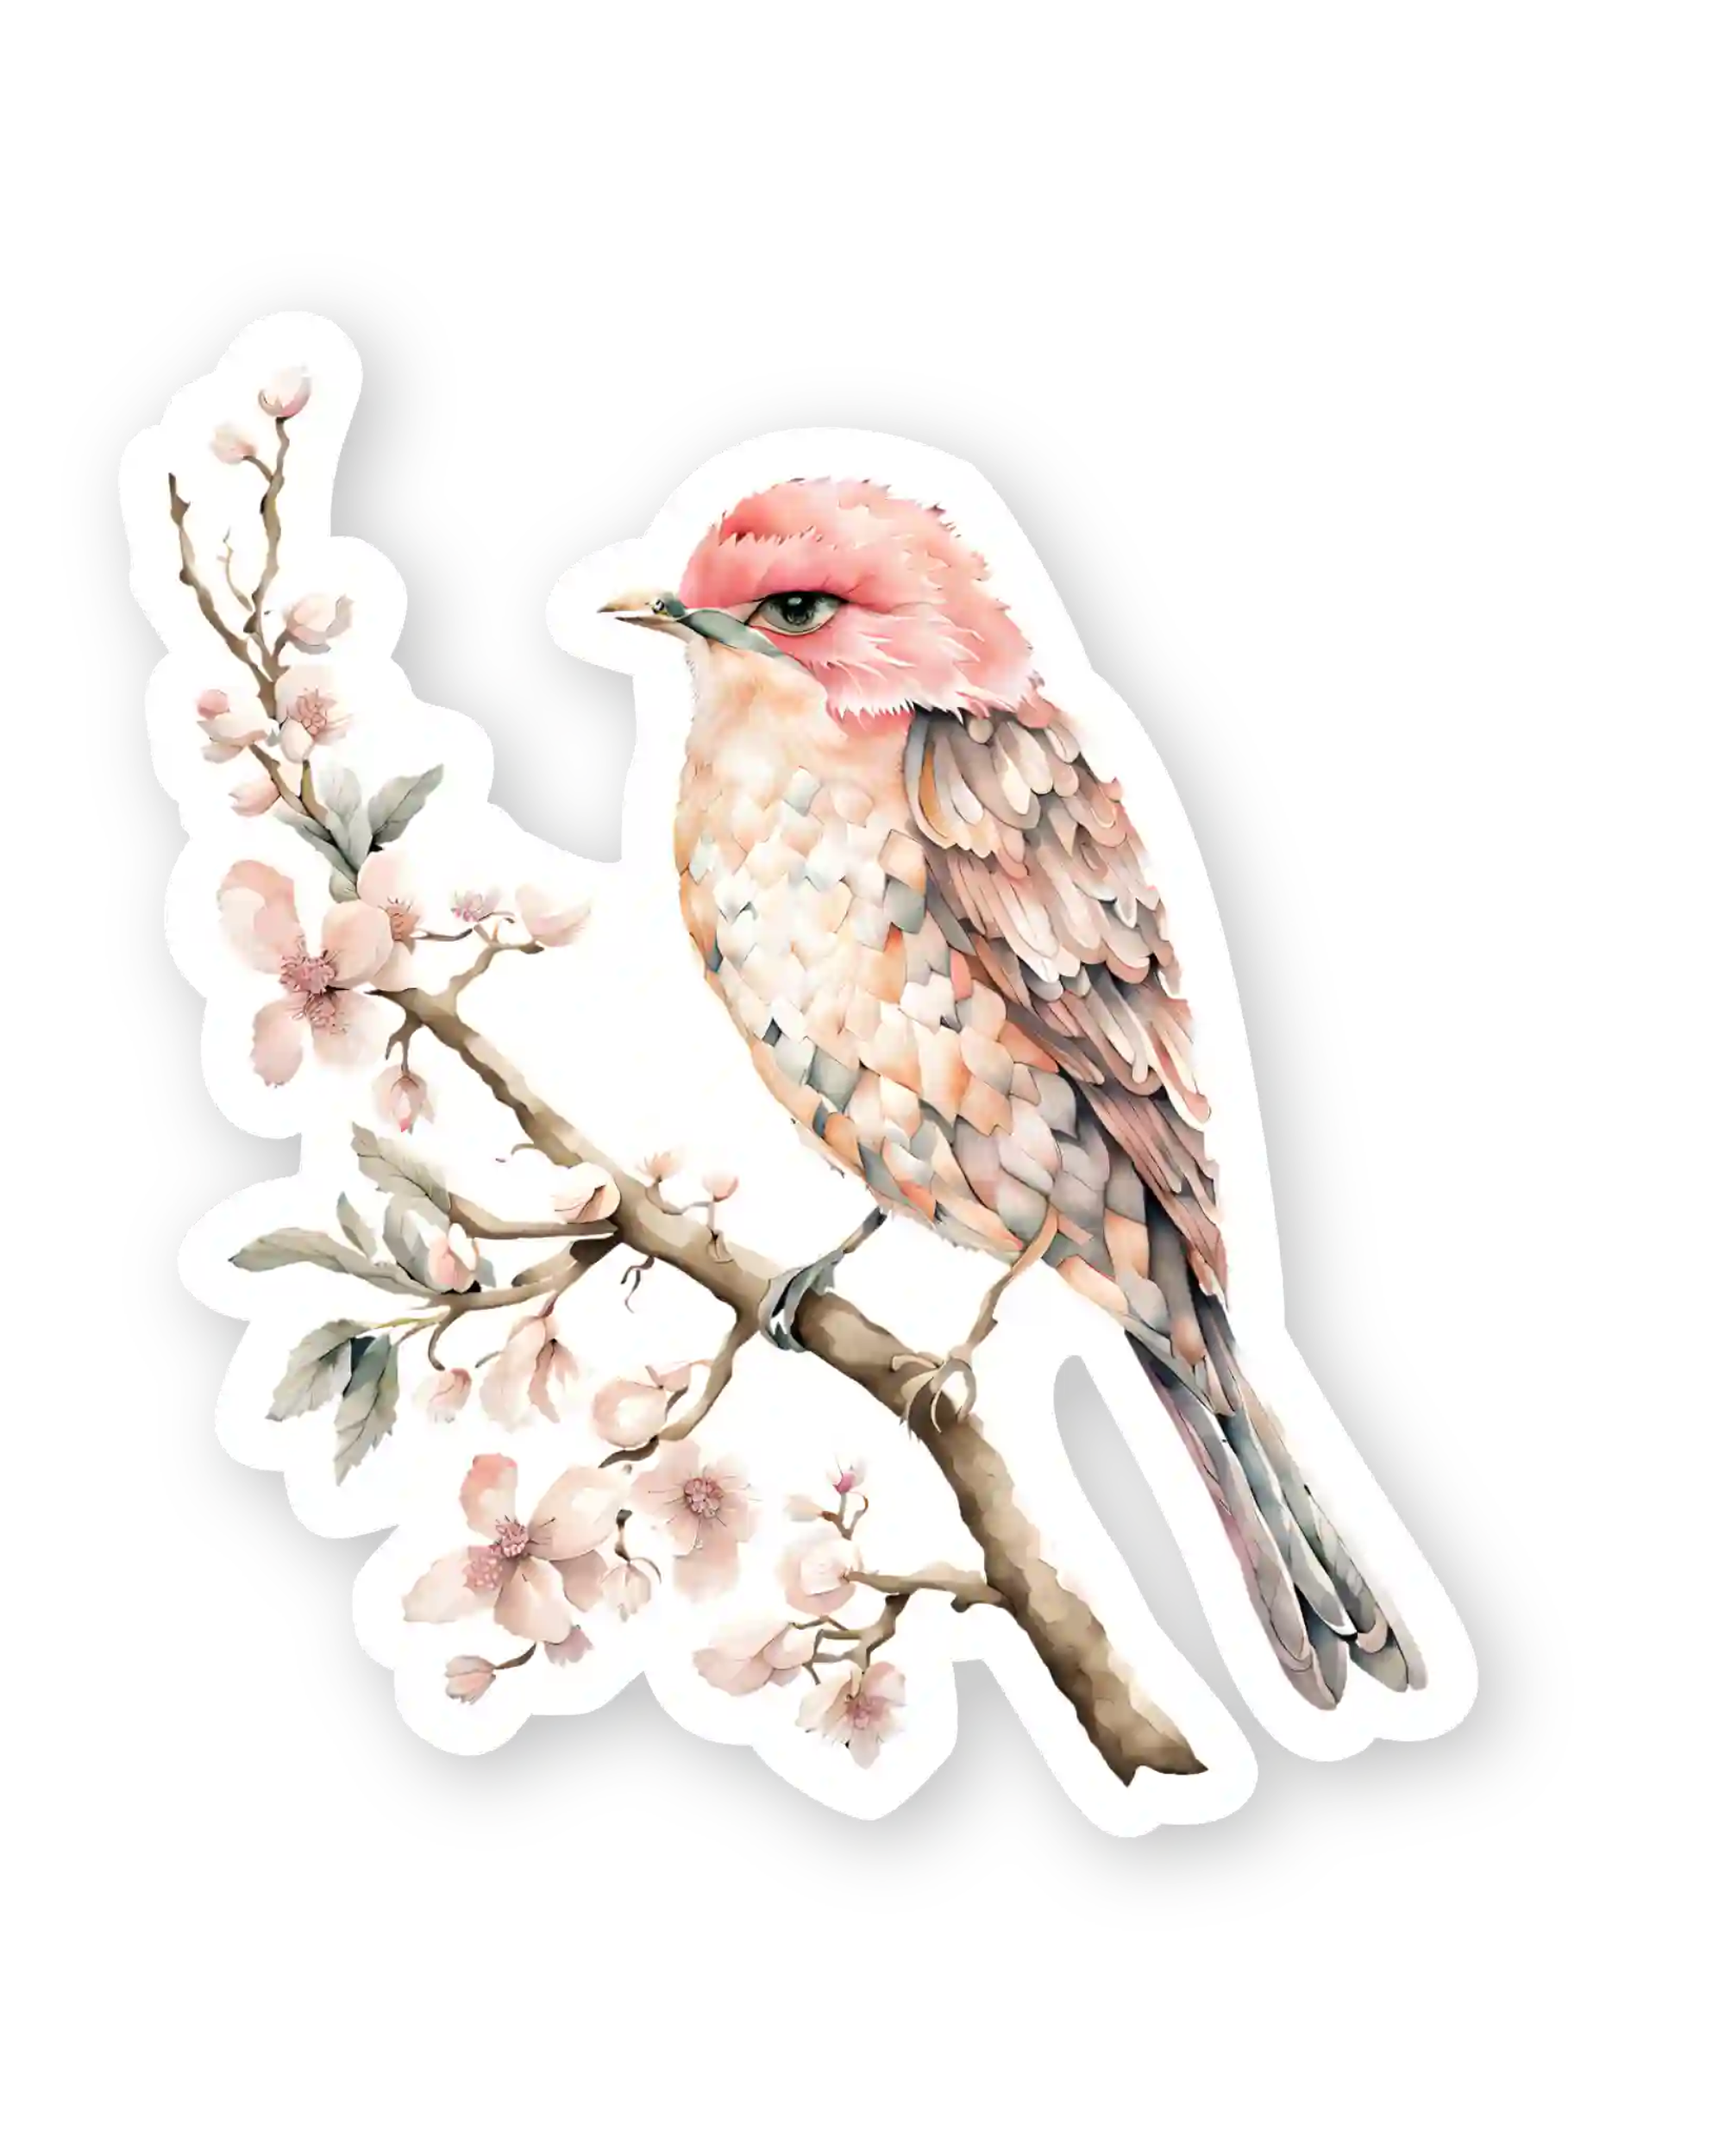 Set naljepnica za planer Everlasting, ilustracija ptica na grani s cvijećem